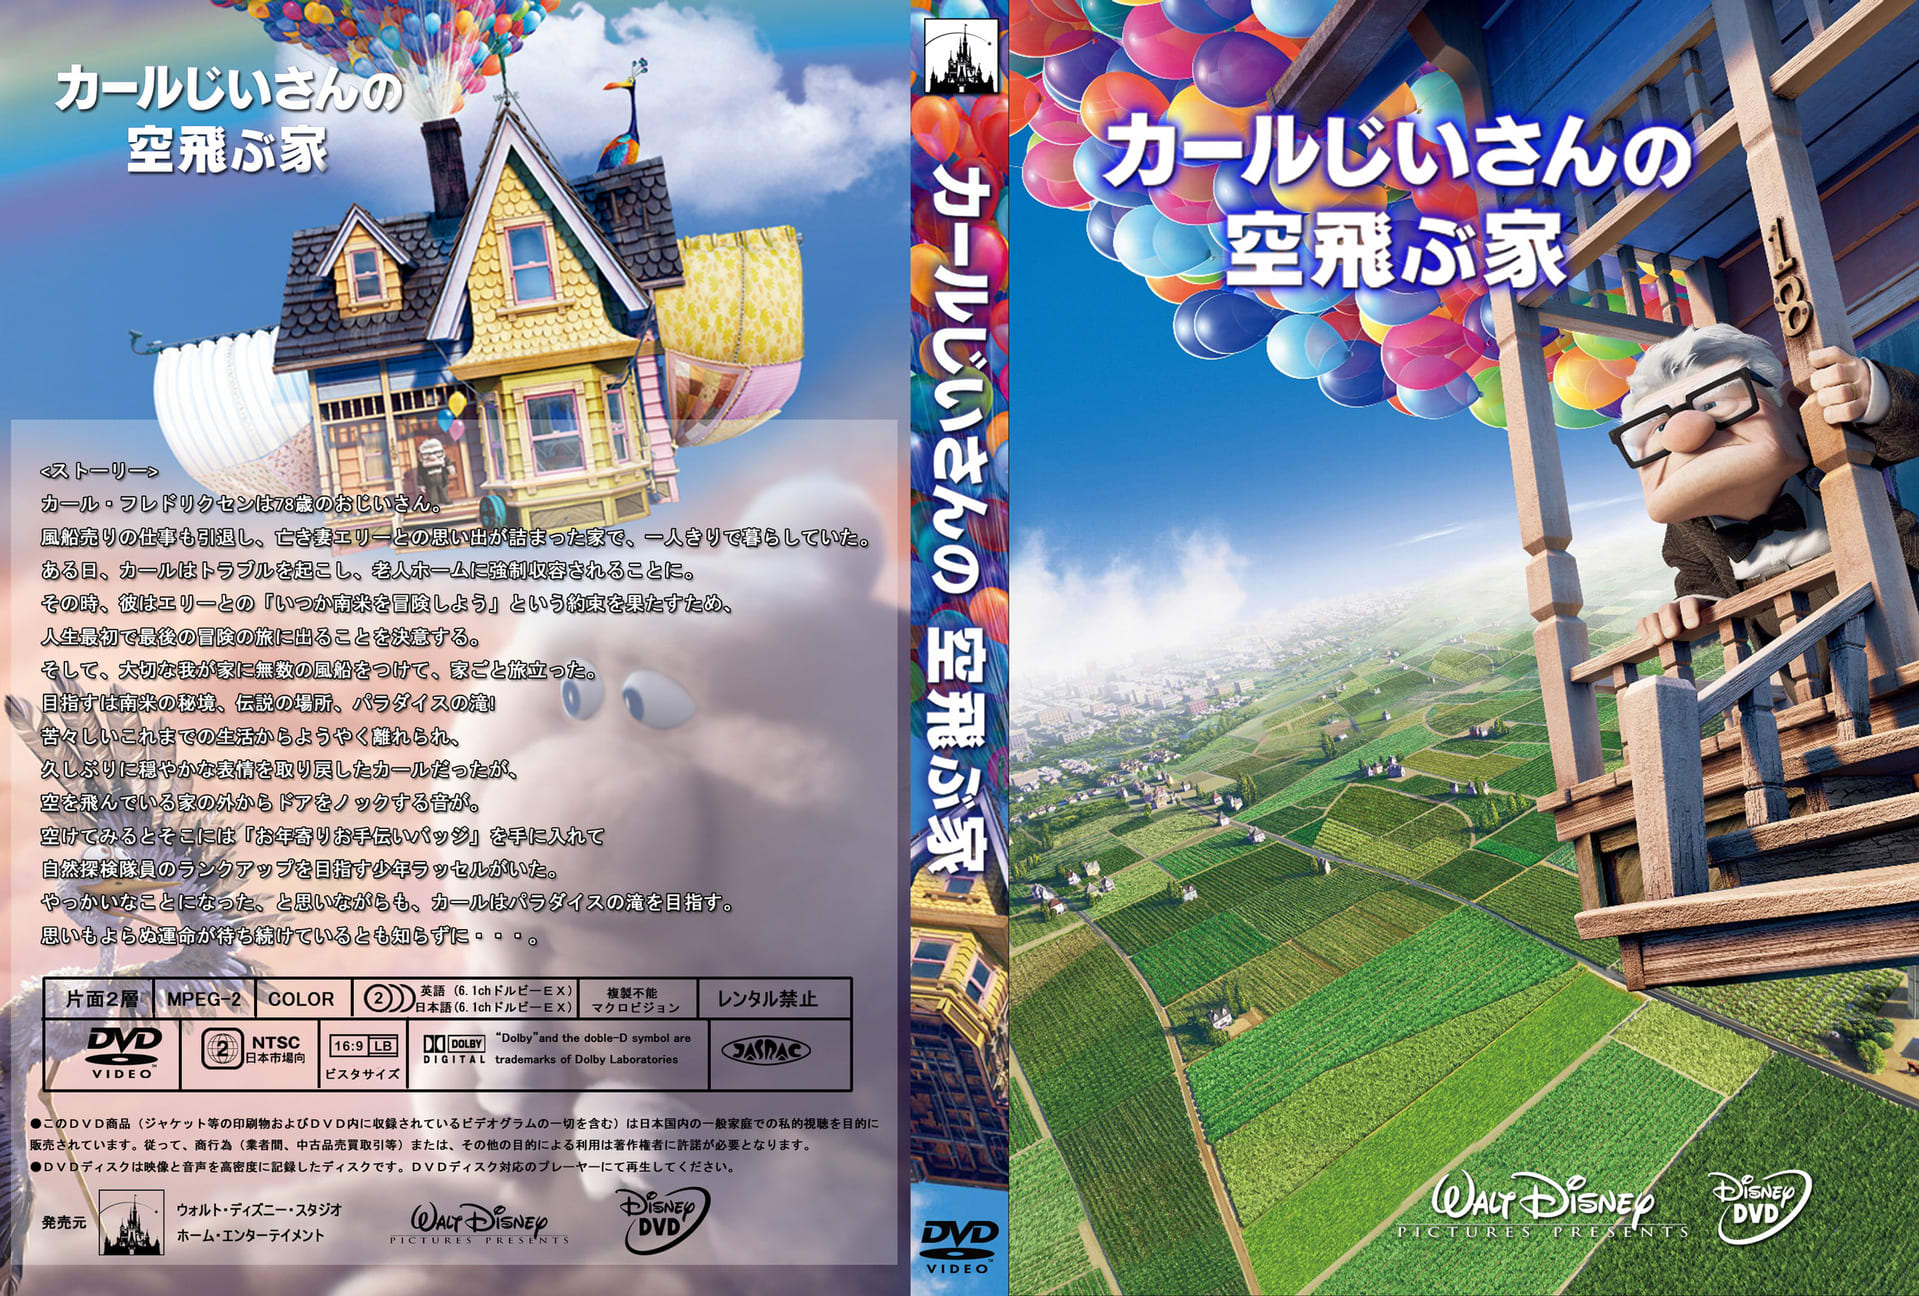 【ズ・ボック】 BD / ディズニー / カールじいさんの空飛ぶ家 コレクターズ・ボックス(Blu-ray) (2Blu-ray+DVD) (2000セット数量限定版)の通販はau PAY